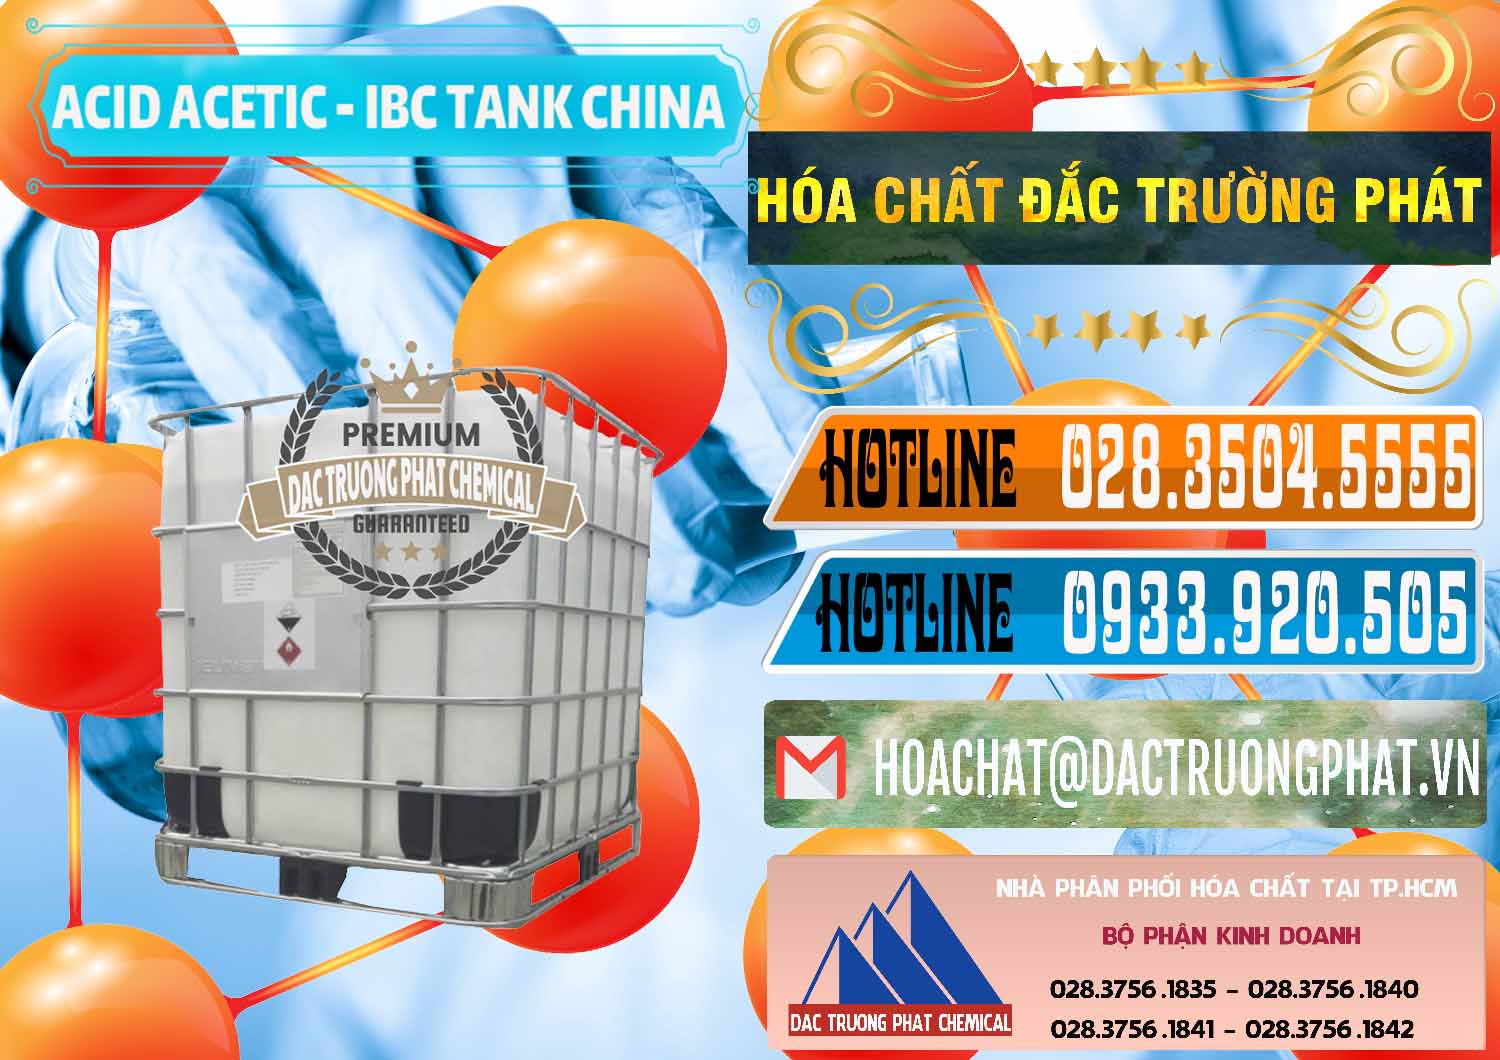 Cty chuyên cung cấp và bán Acetic Acid – Axit Acetic Tank Bồn IBC Trung Quốc China - 0443 - Đơn vị chuyên kinh doanh - cung cấp hóa chất tại TP.HCM - stmp.net